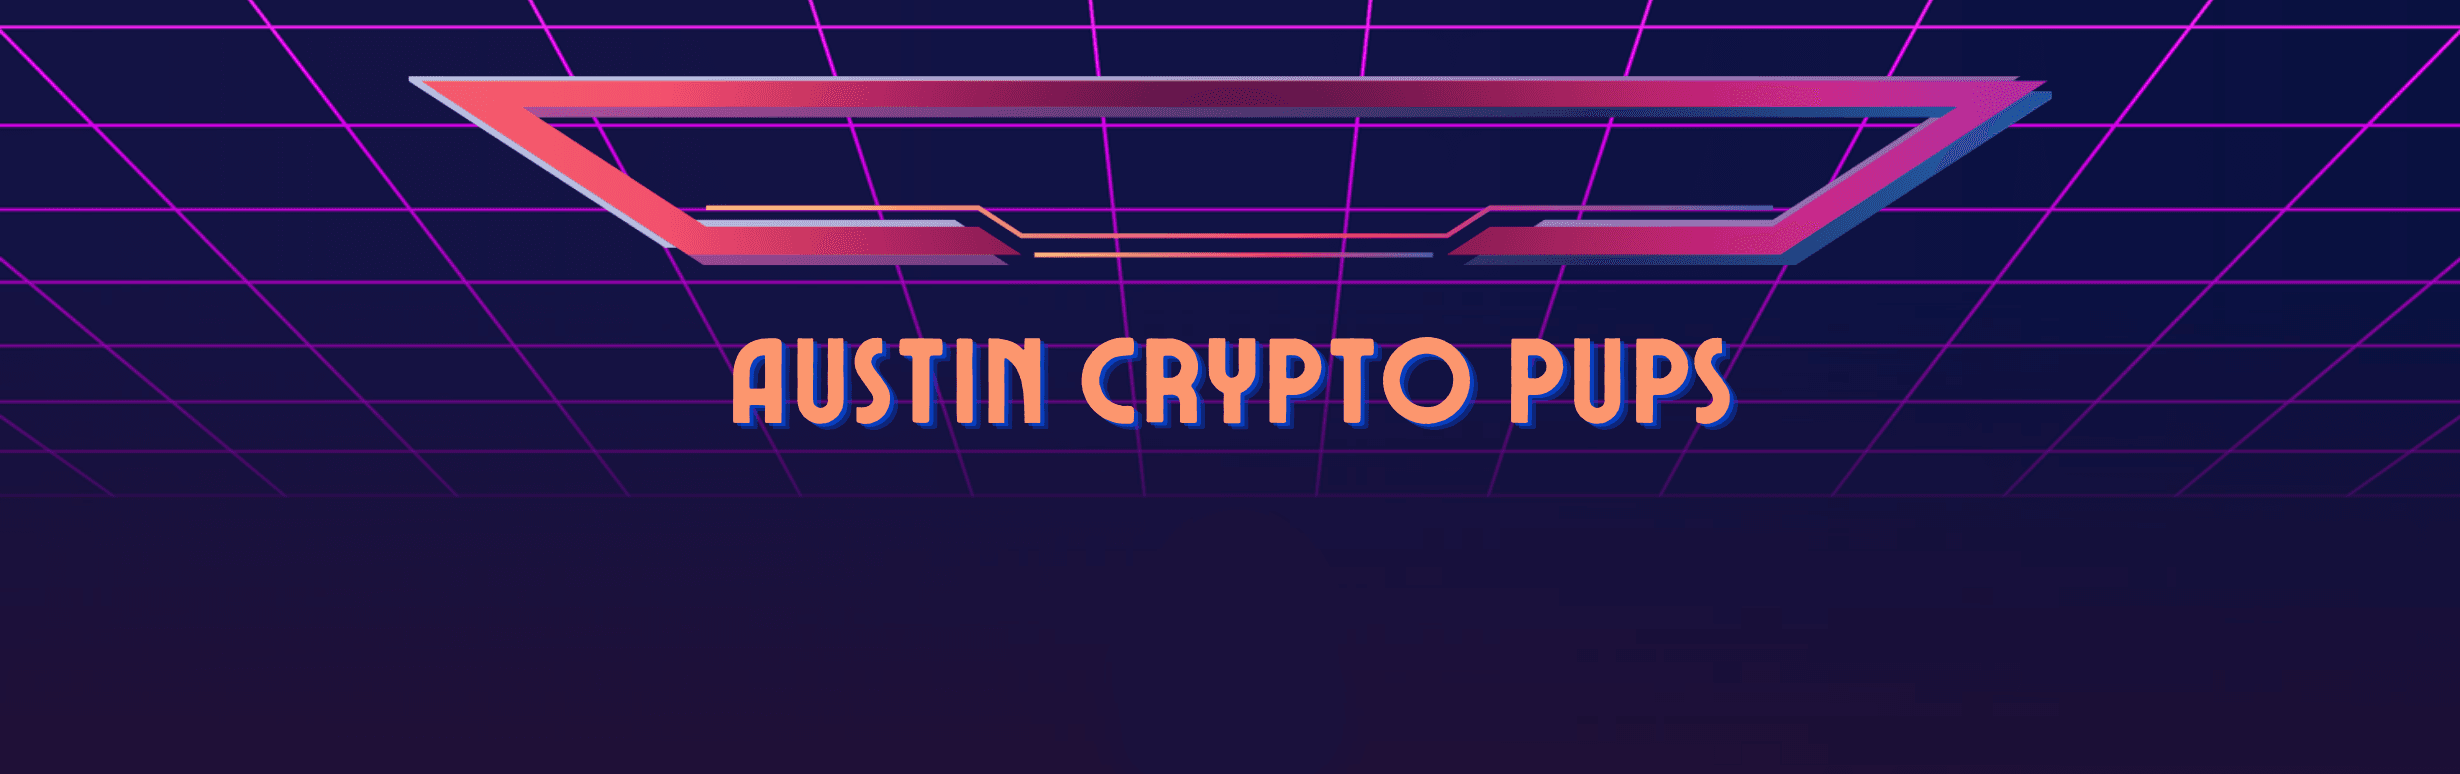 AustinCryptoPups banner